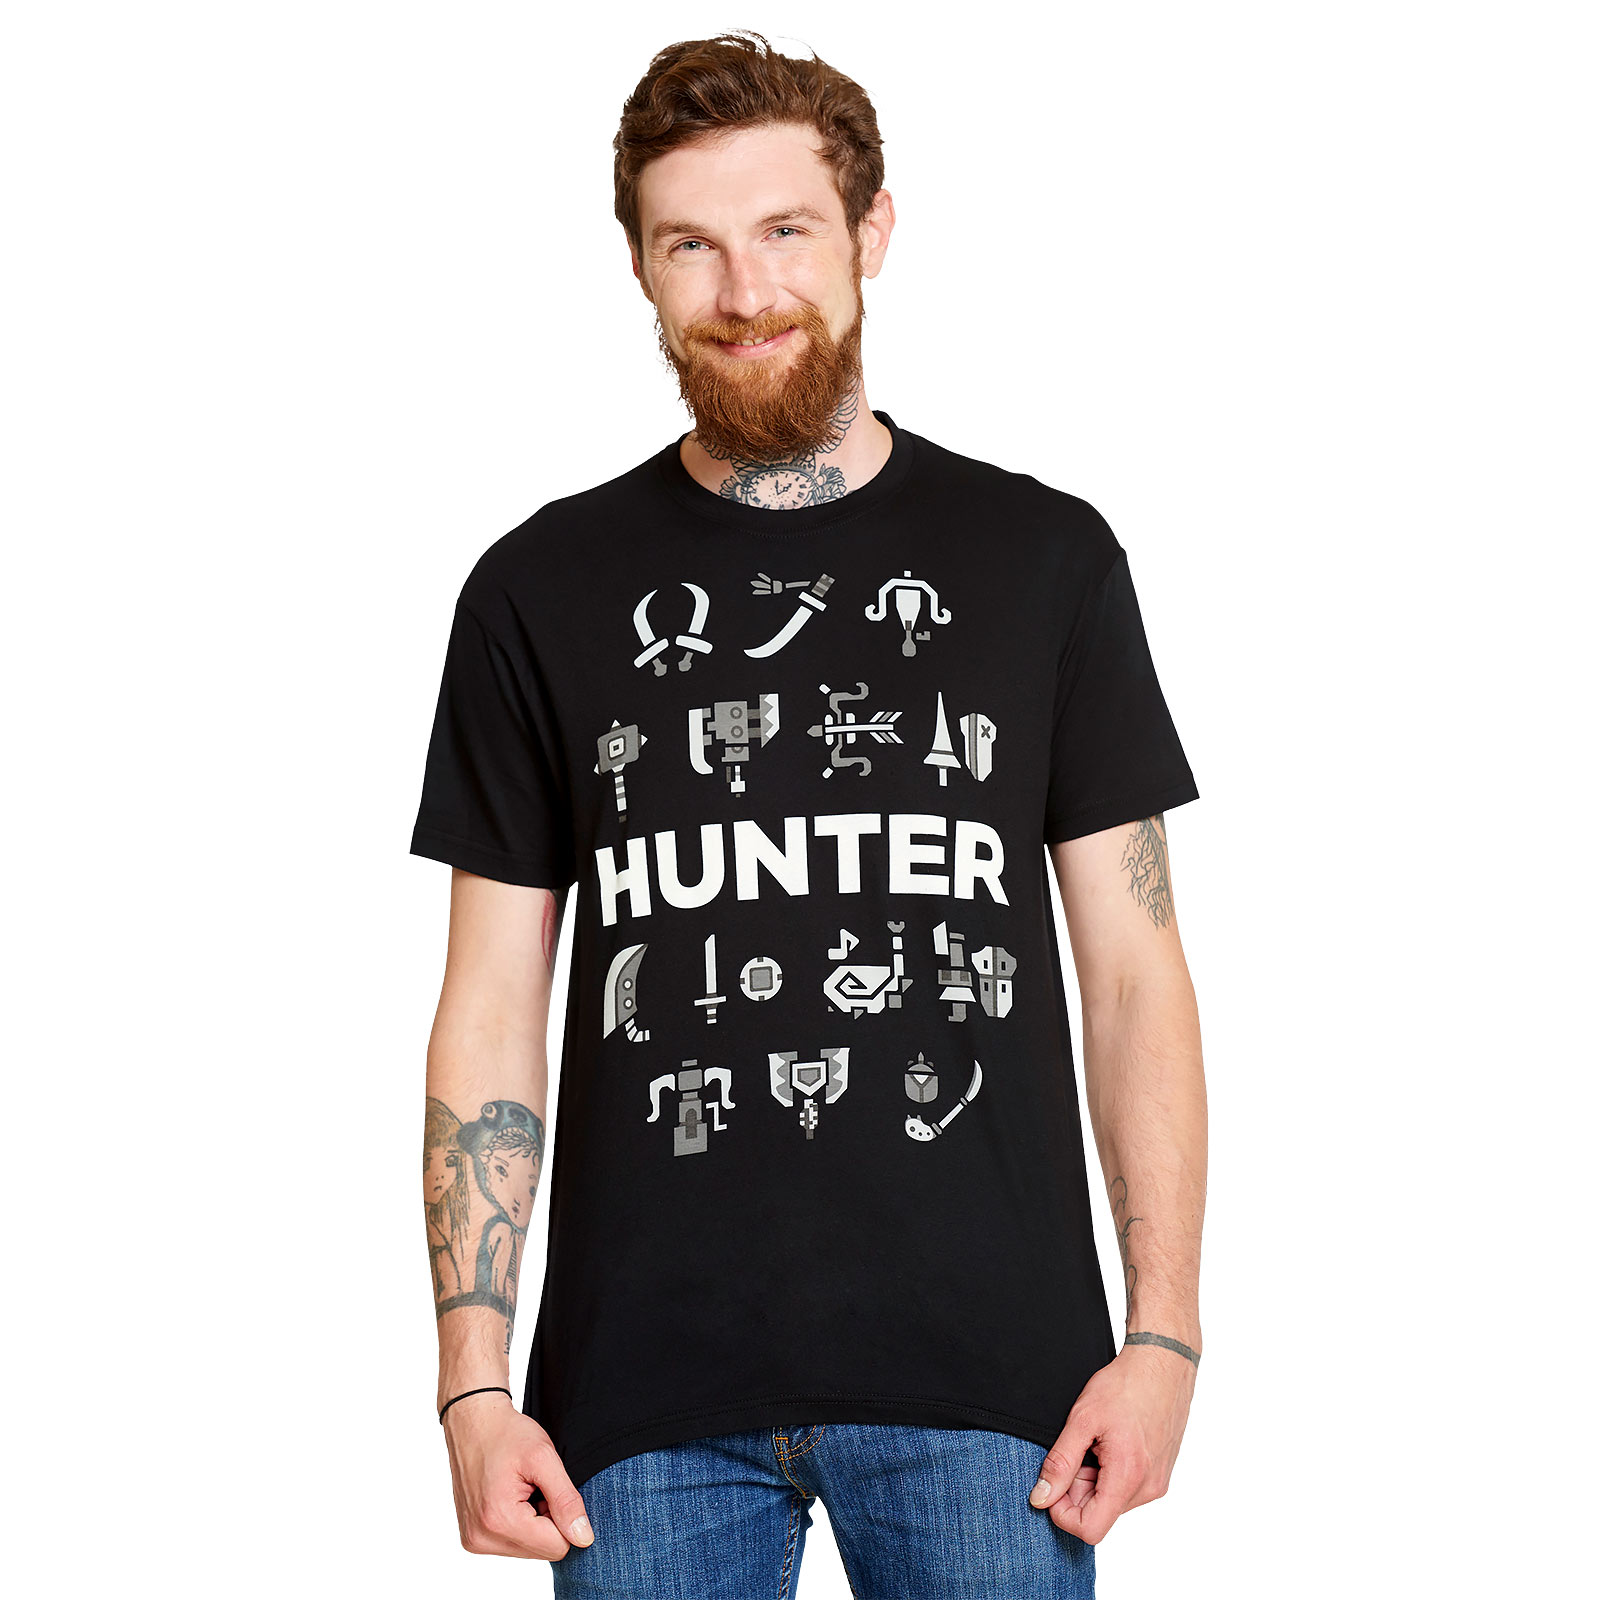 Monster Hunter - Choisissez vos armes T-shirt noir